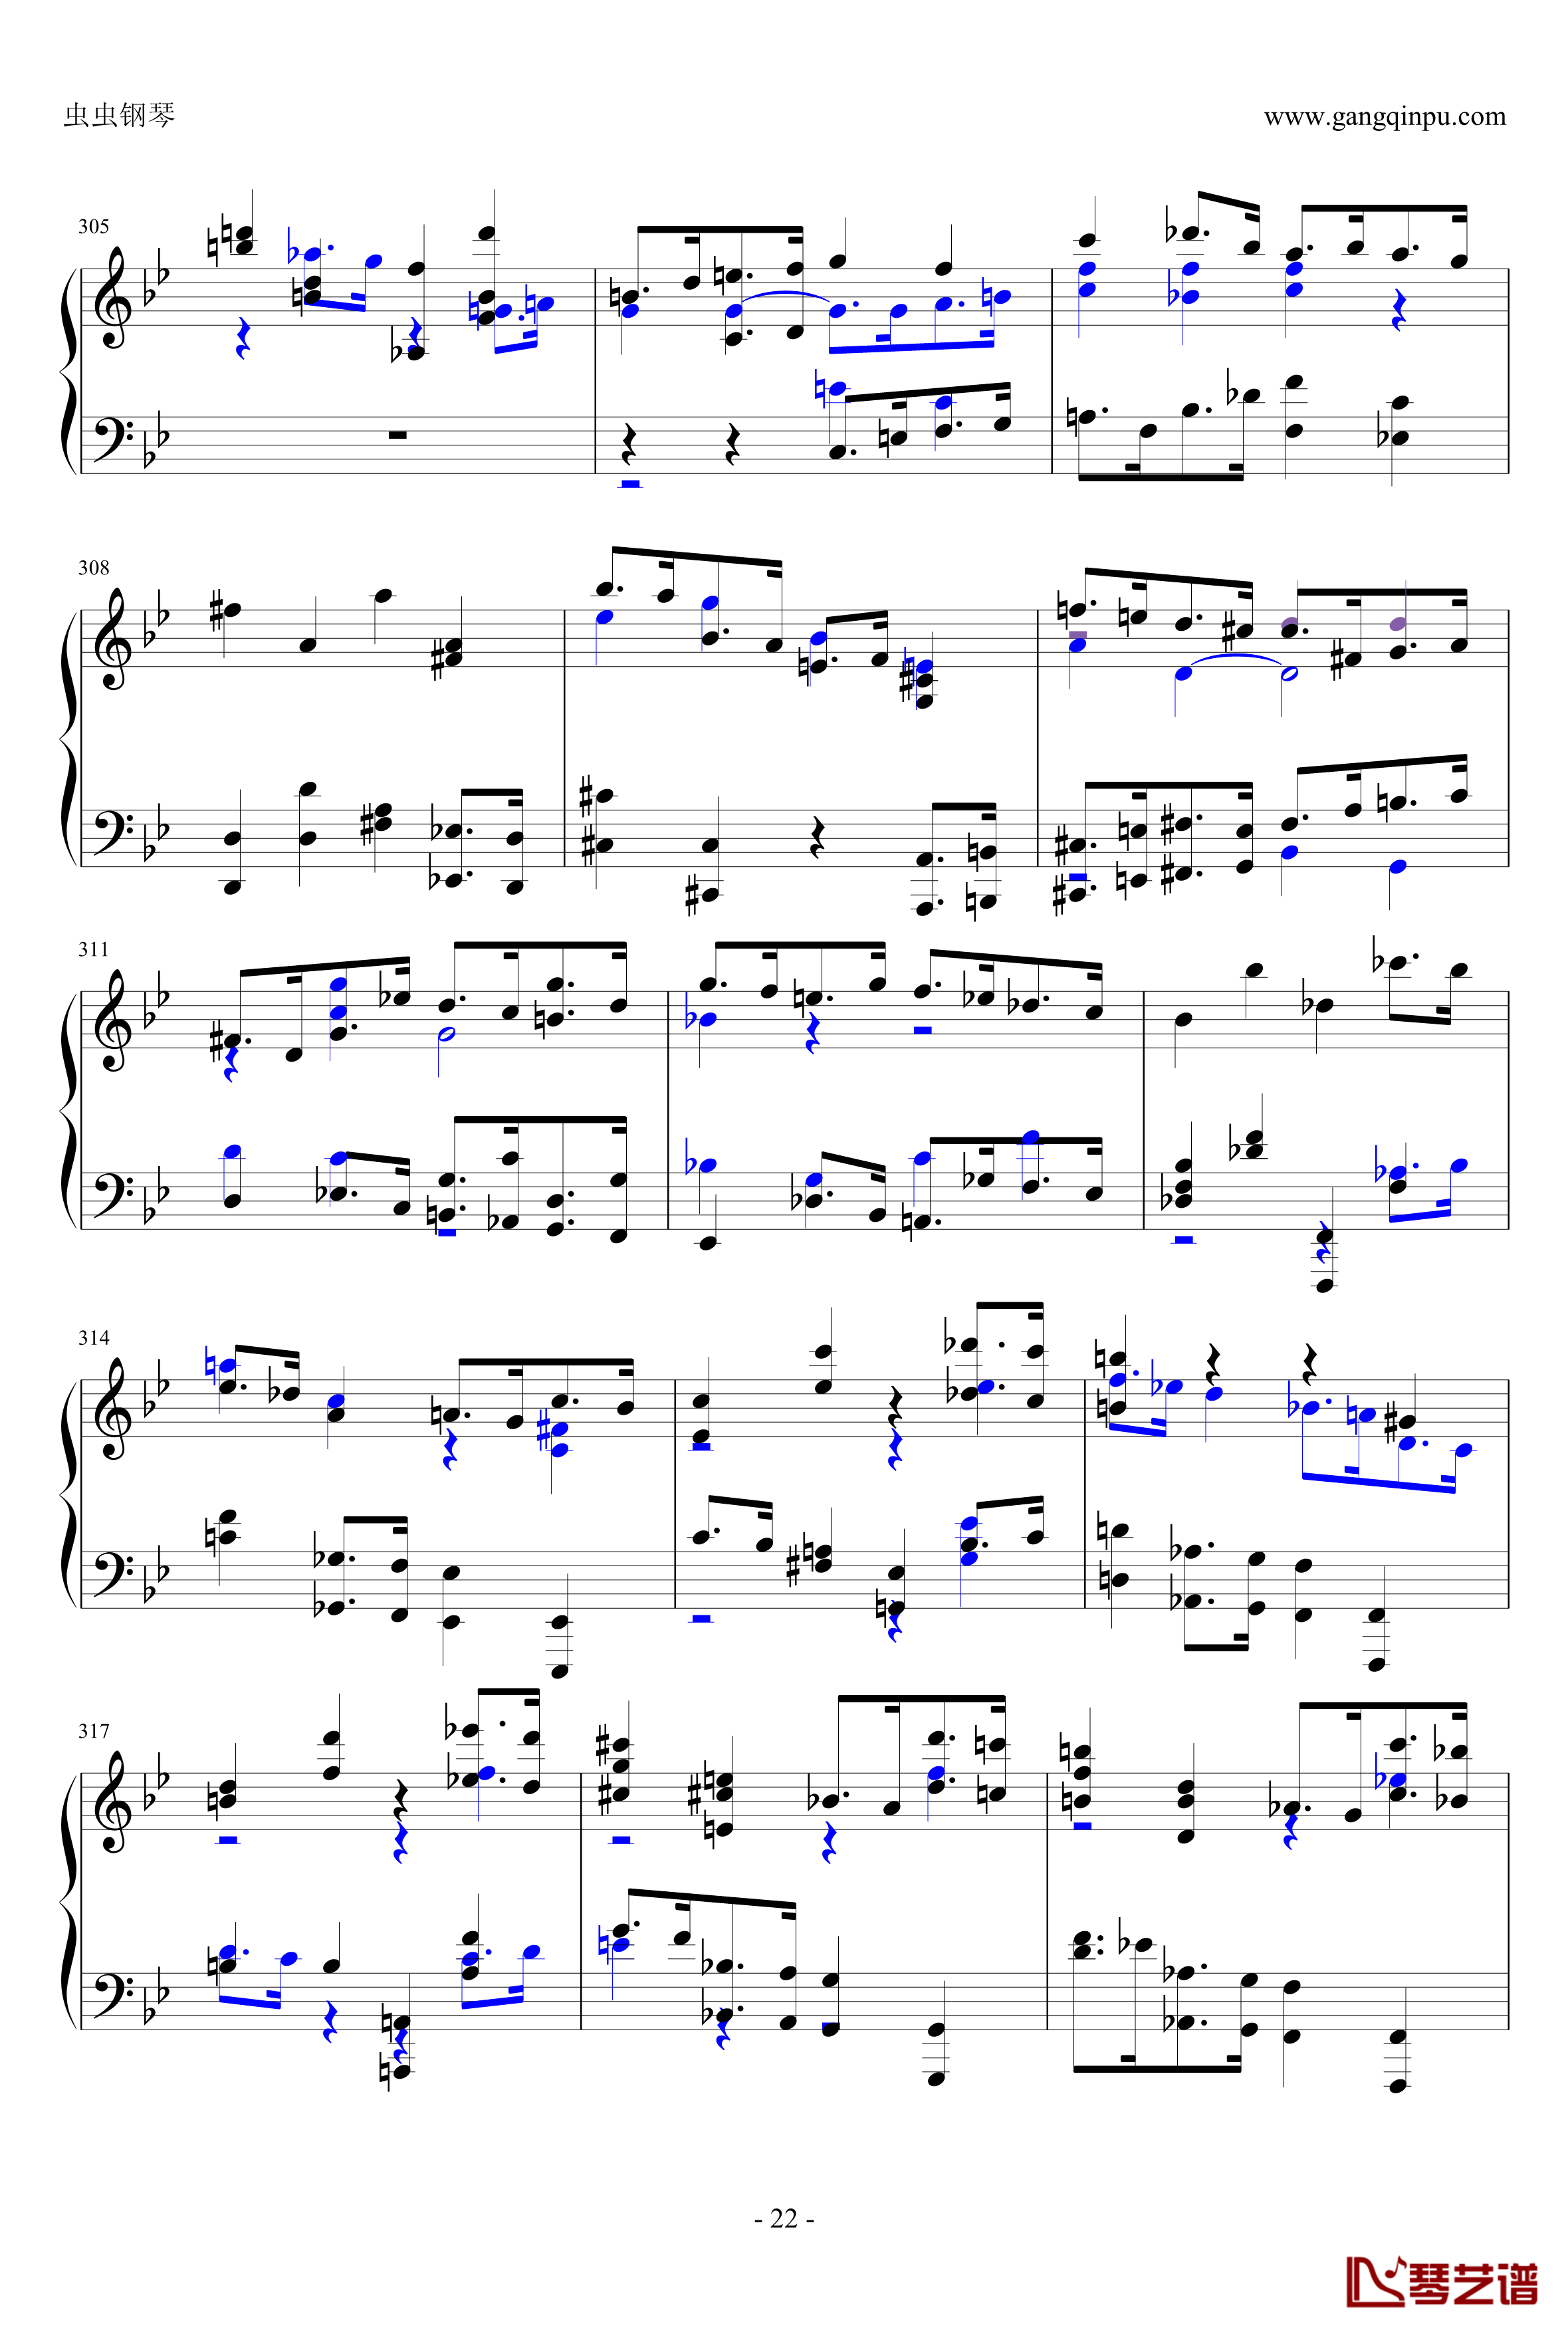 布鲁克纳第五交响曲第四乐章钢琴谱-钢琴独奏版22